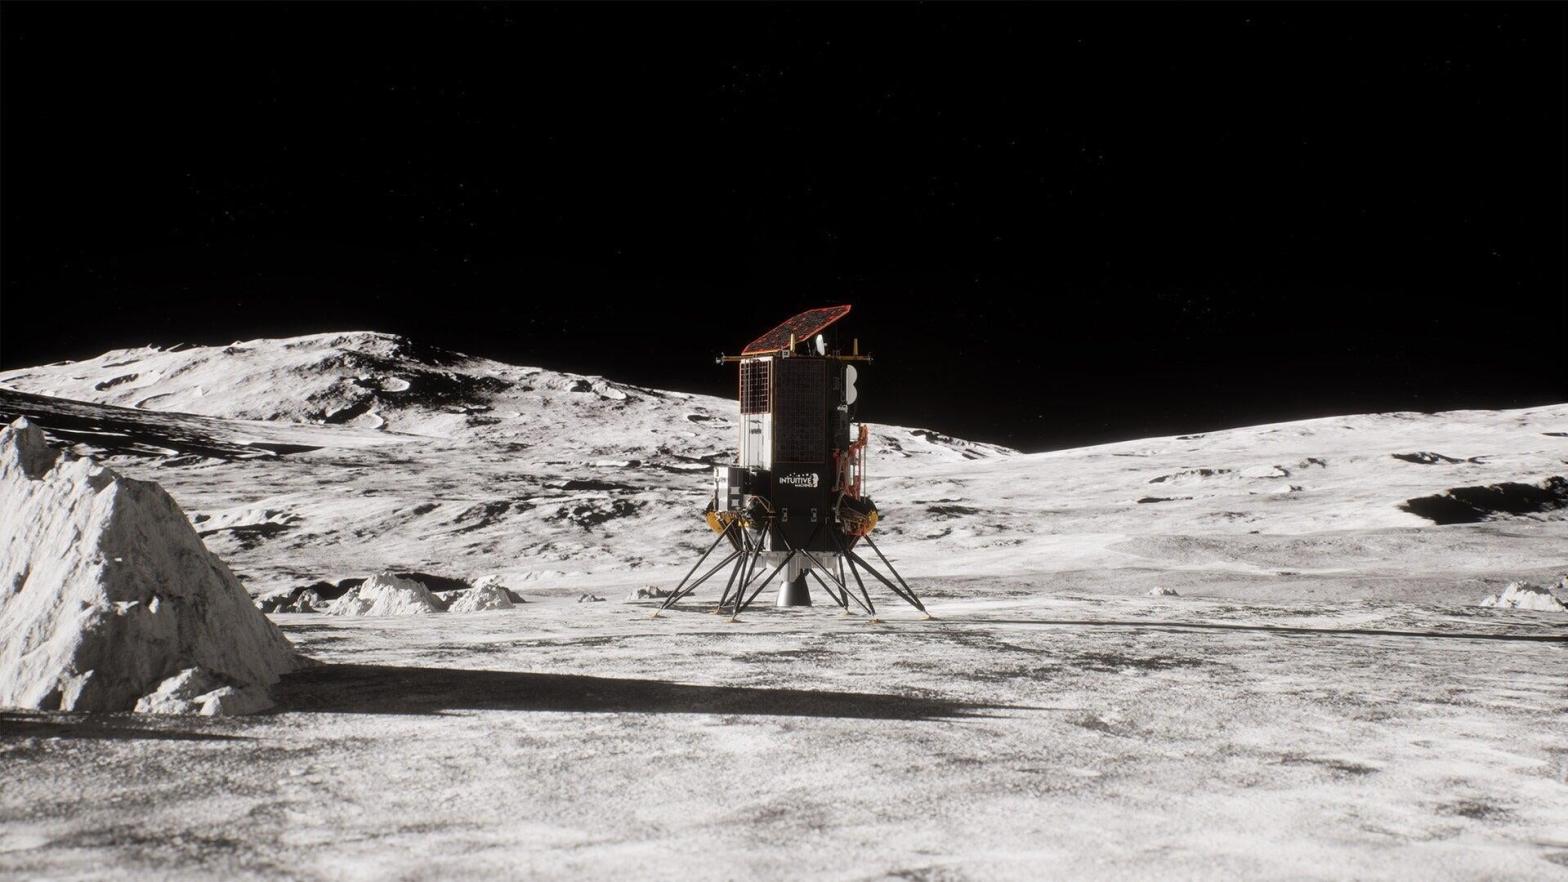 Image: Nokia/Lunar Mission